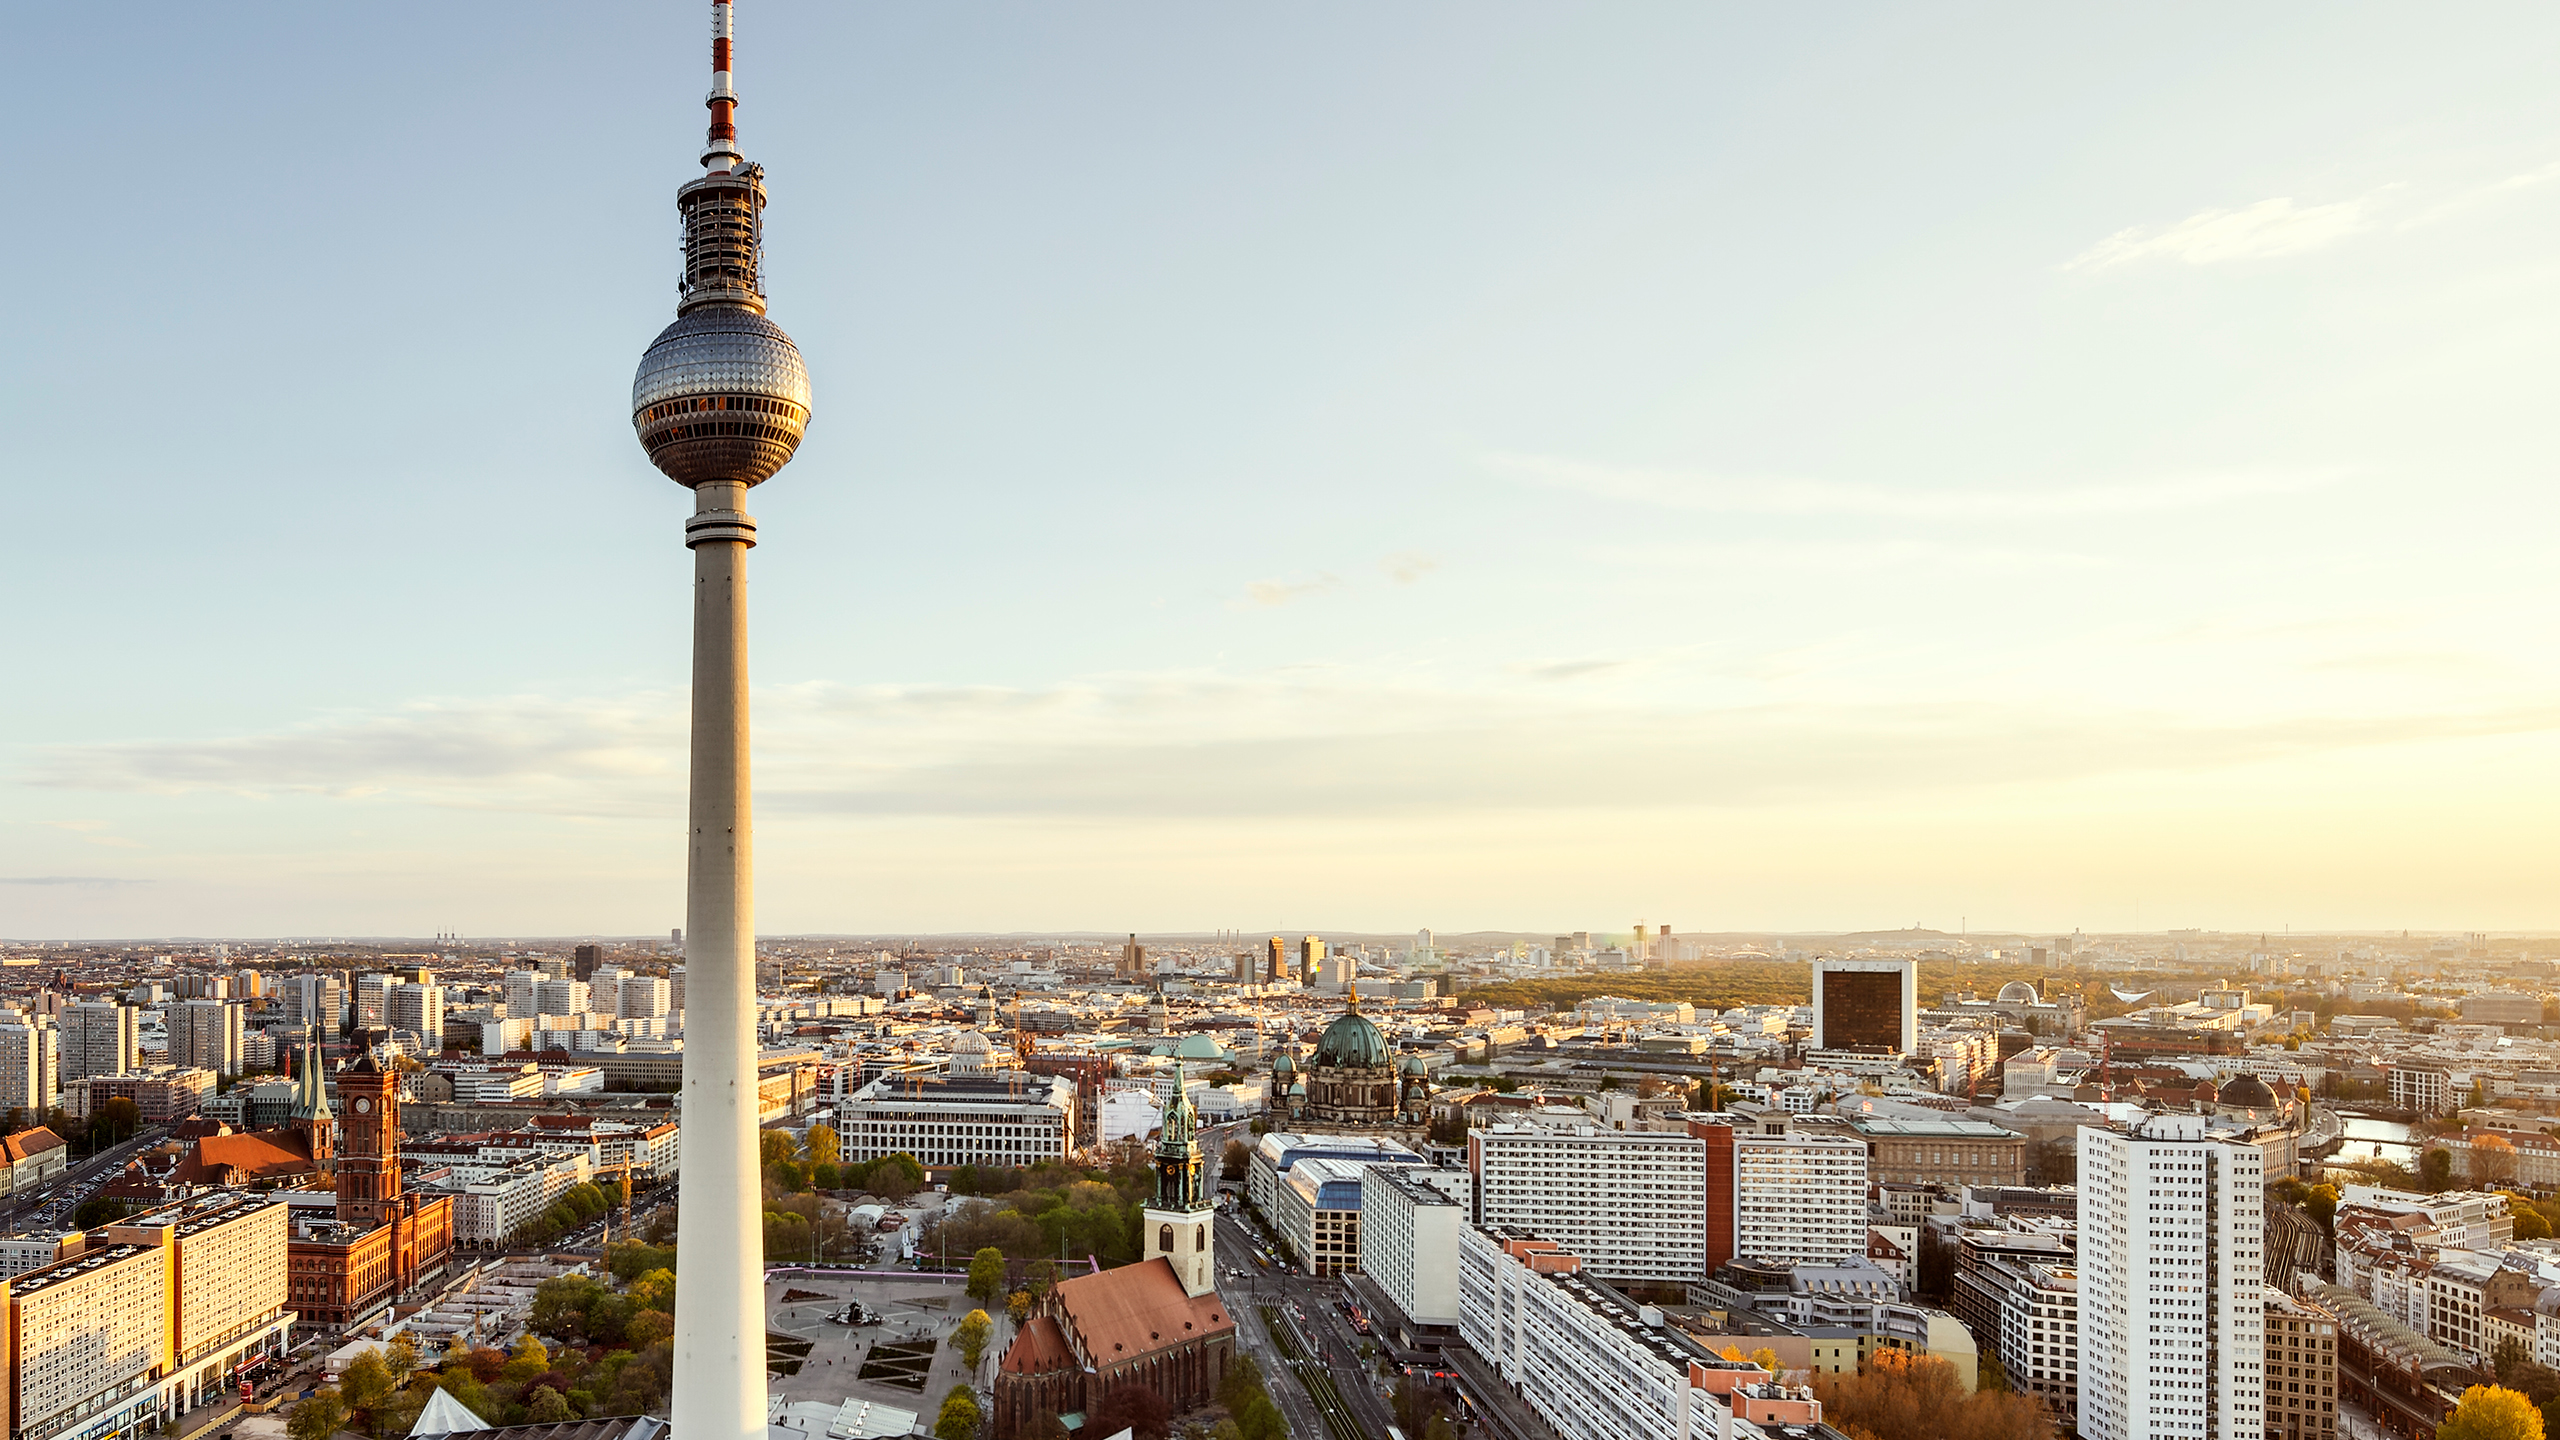 Panorama von Berlin im Sonnenaufgang, zentral der Berliner Fernsehturm. Rico Wasikowski via Getty Images